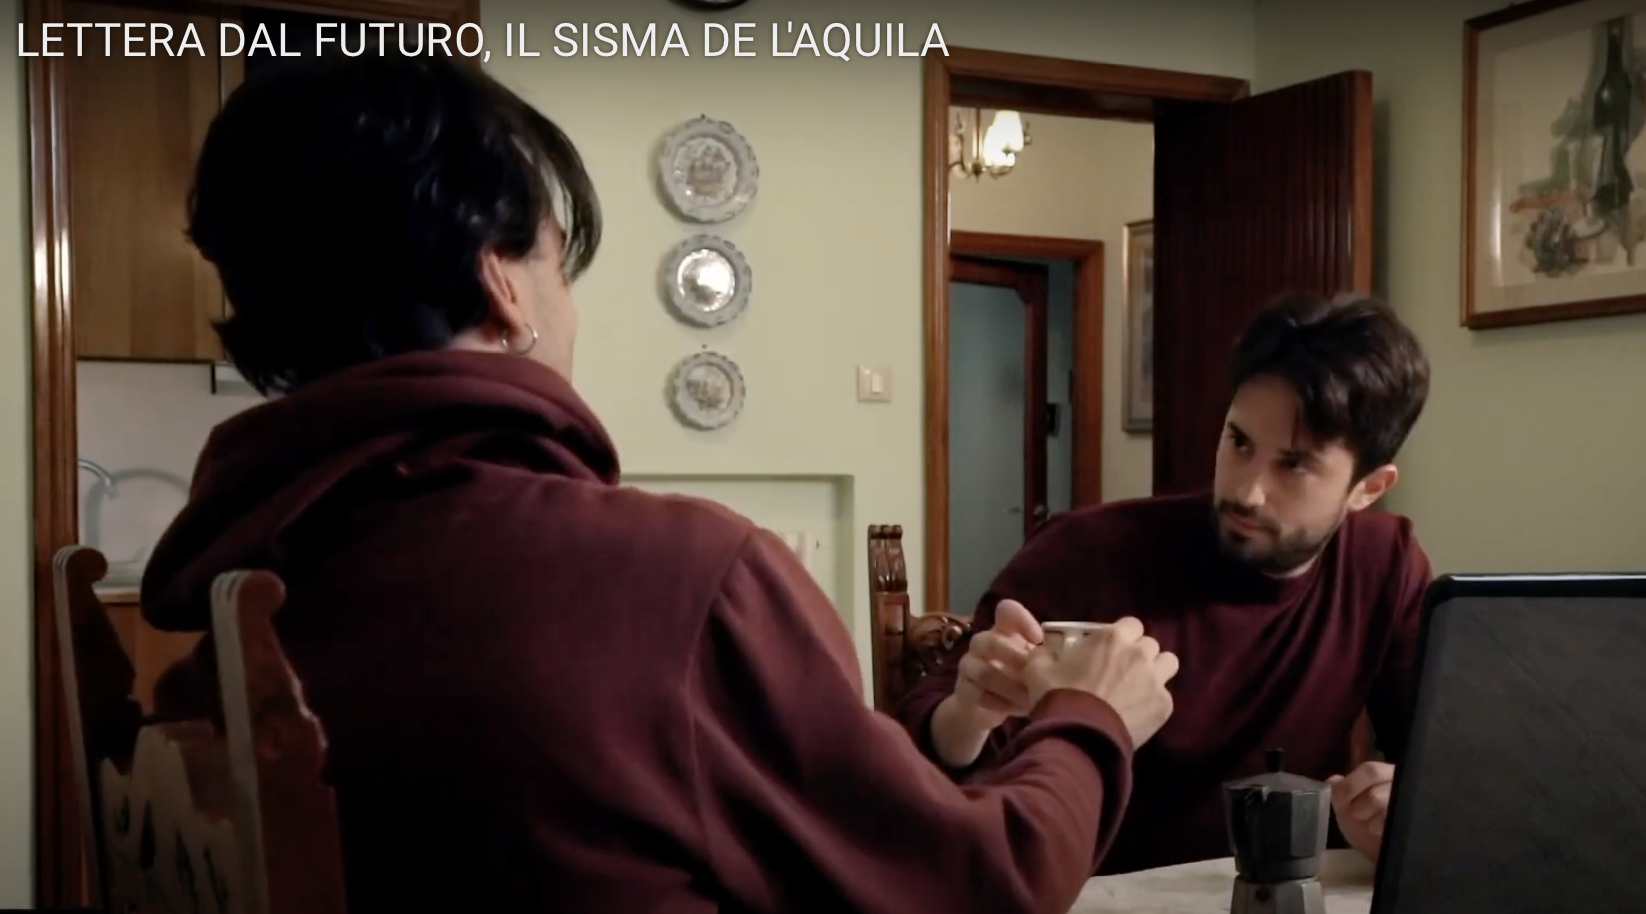 WallTv. 14 anni dal terremoto de L’Aquila: “Lettera dal Futuro”, un corto di Umberto Braccili/VIDEO